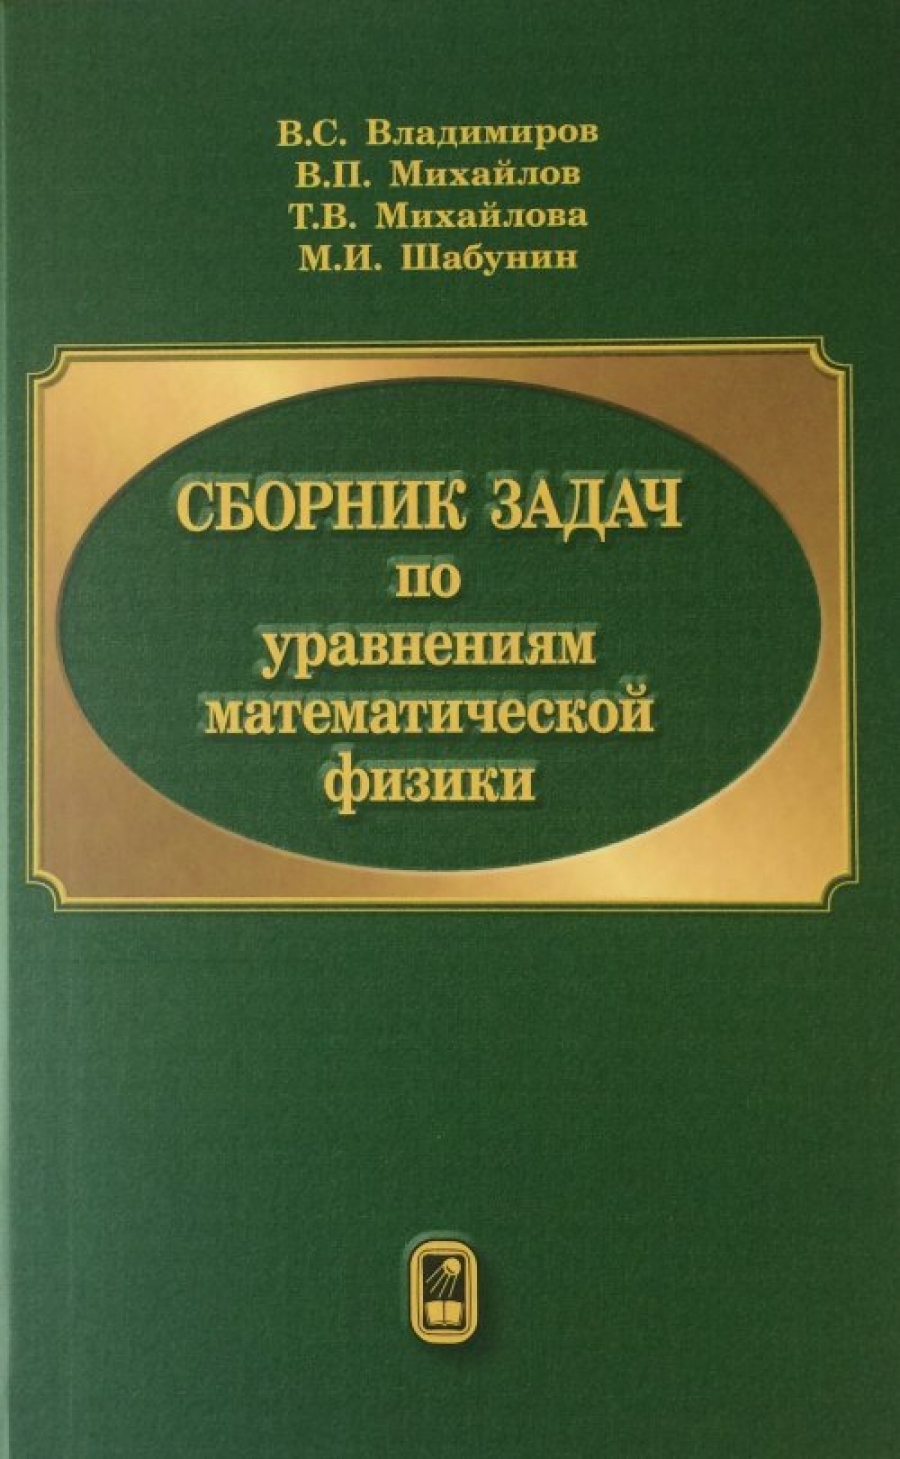 Шабунин М.И., Владимиров В.С., Михайлов В.П. Сборник задач по уравнениям математической физики 